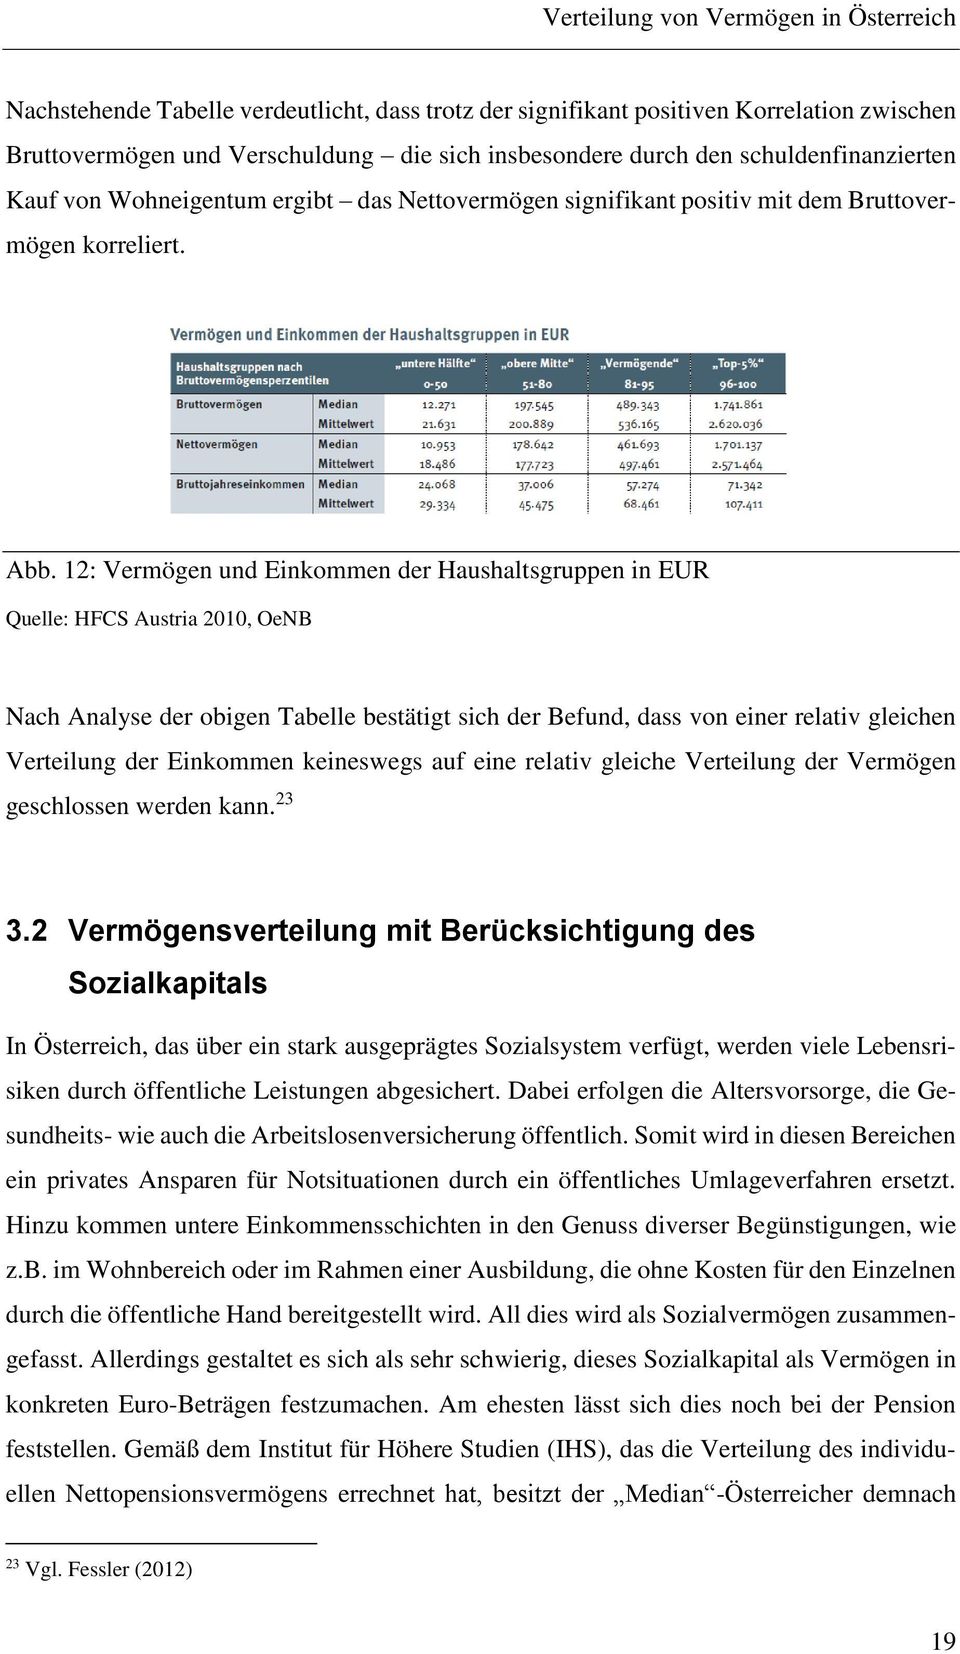 12: Vermögen und Einkommen der Haushaltsgruppen in EUR Quelle: HFCS Austria 2010, OeNB Nach Analyse der obigen Tabelle bestätigt sich der Befund, dass von einer relativ gleichen Verteilung der